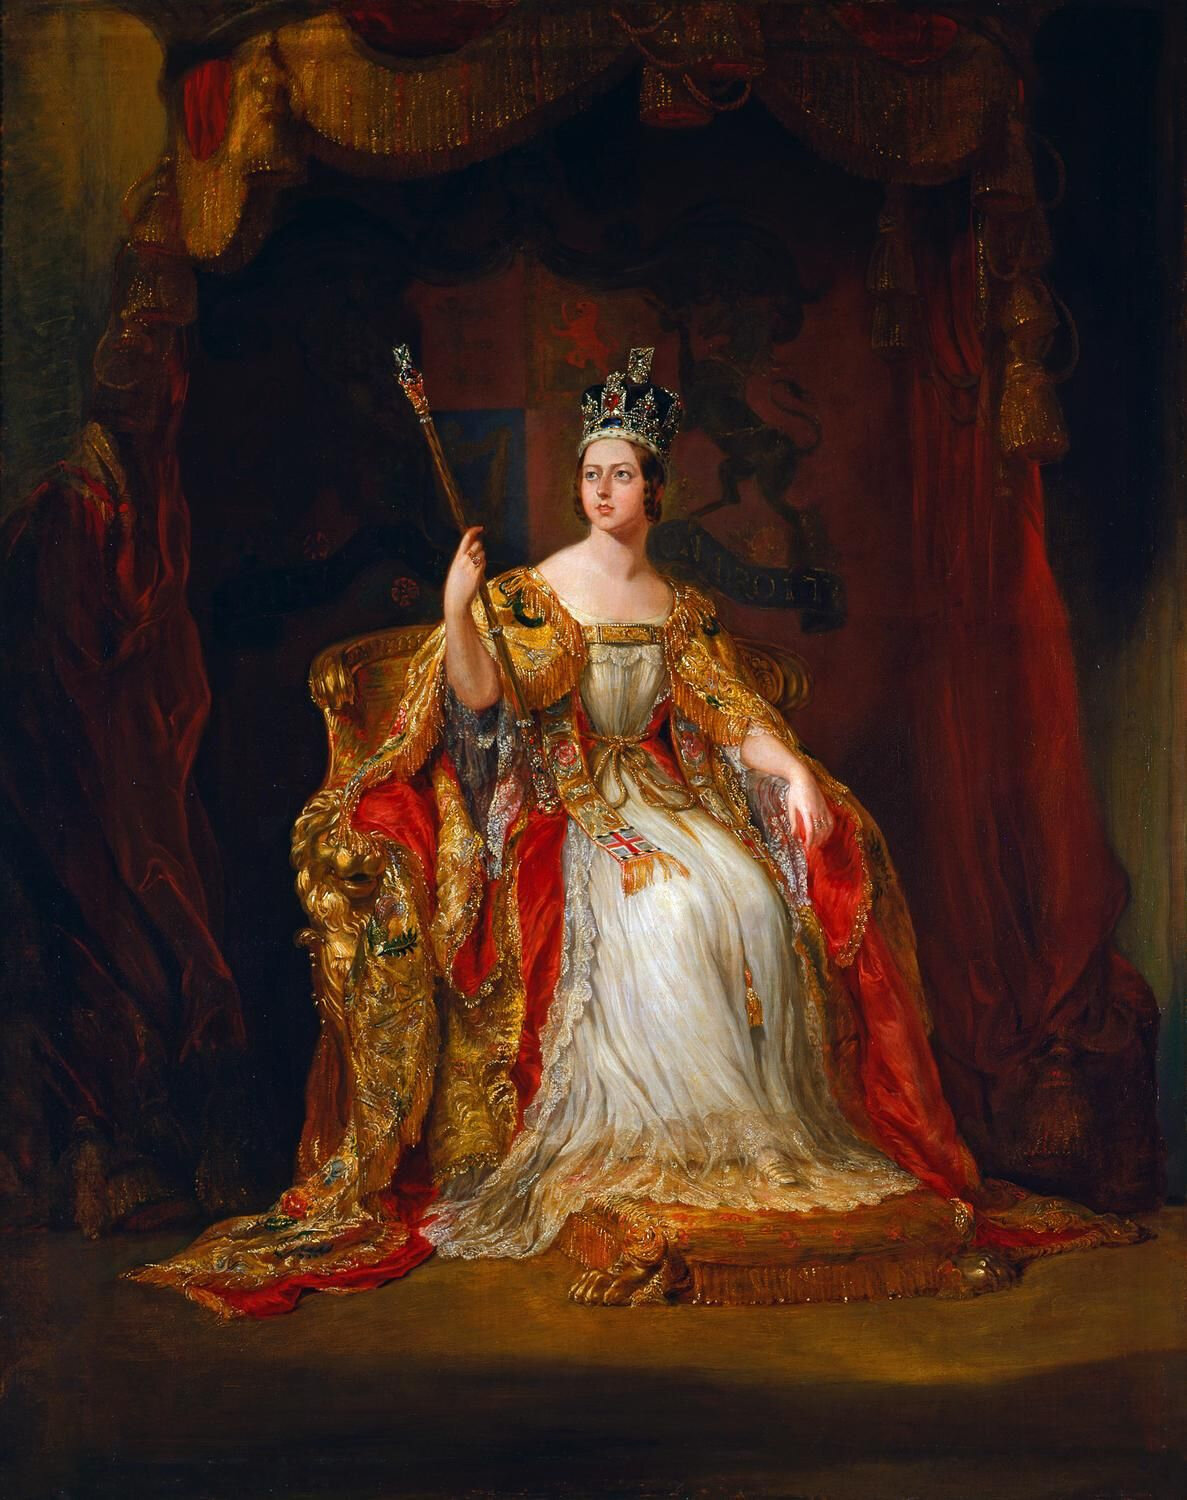 Coronation_portrait_of_Queen_Victoria_-_Hayter_1838.jpg